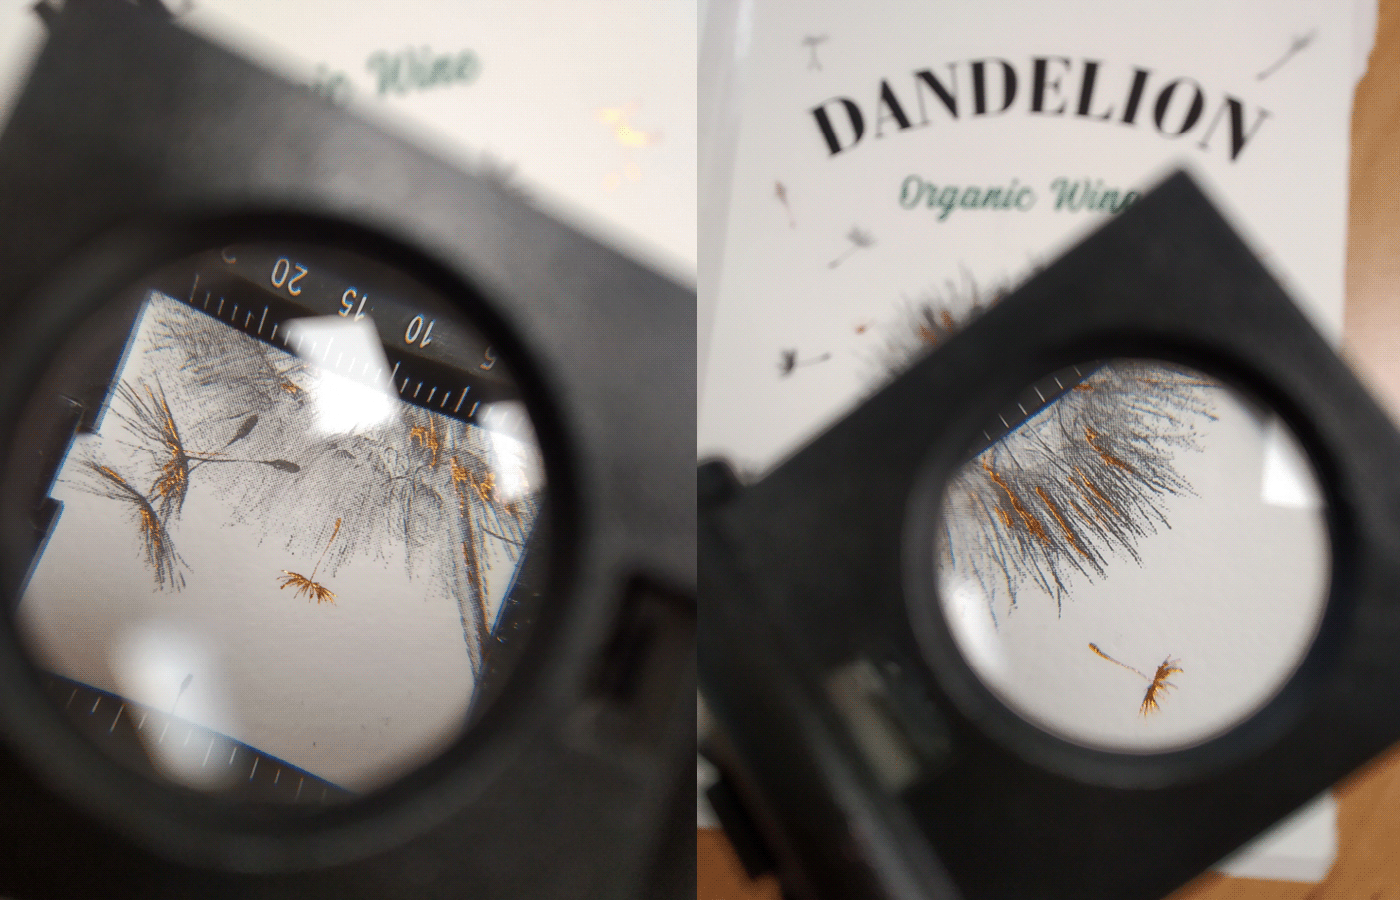 Dandelion wine packaging design, details.